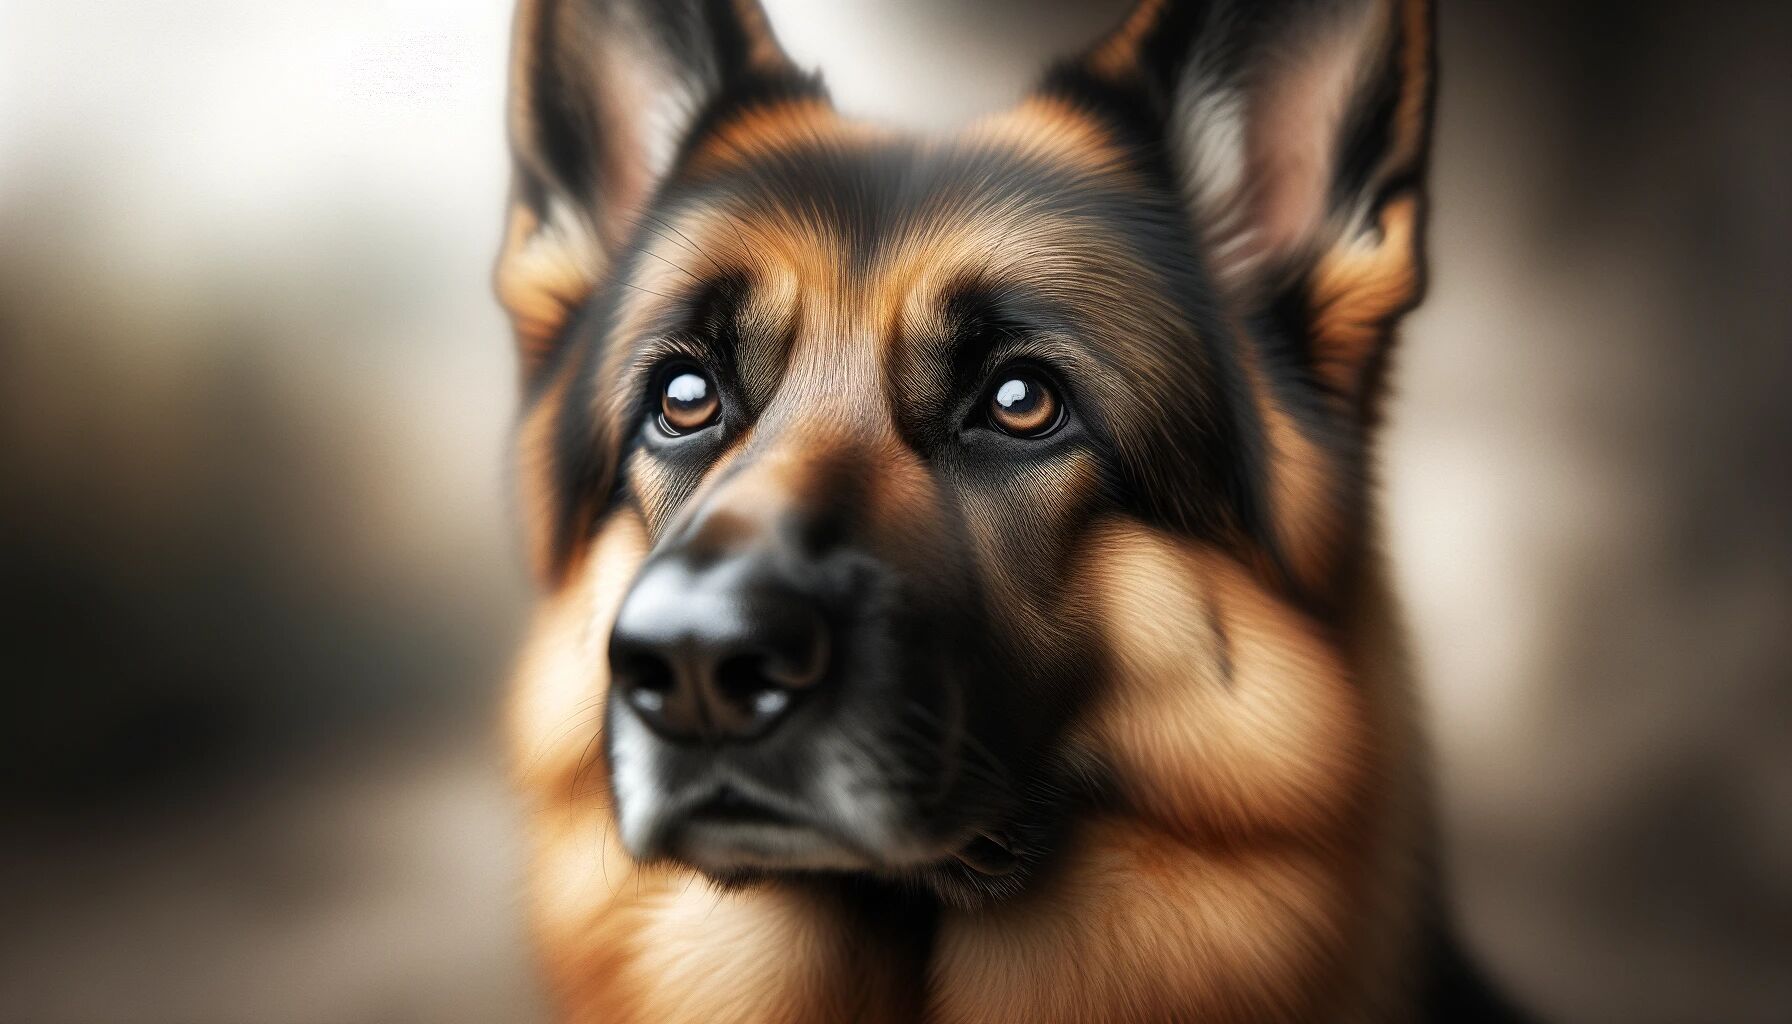 The Loyal Guardian: A Closer Look at Protective Dog Breeds Thumbnail